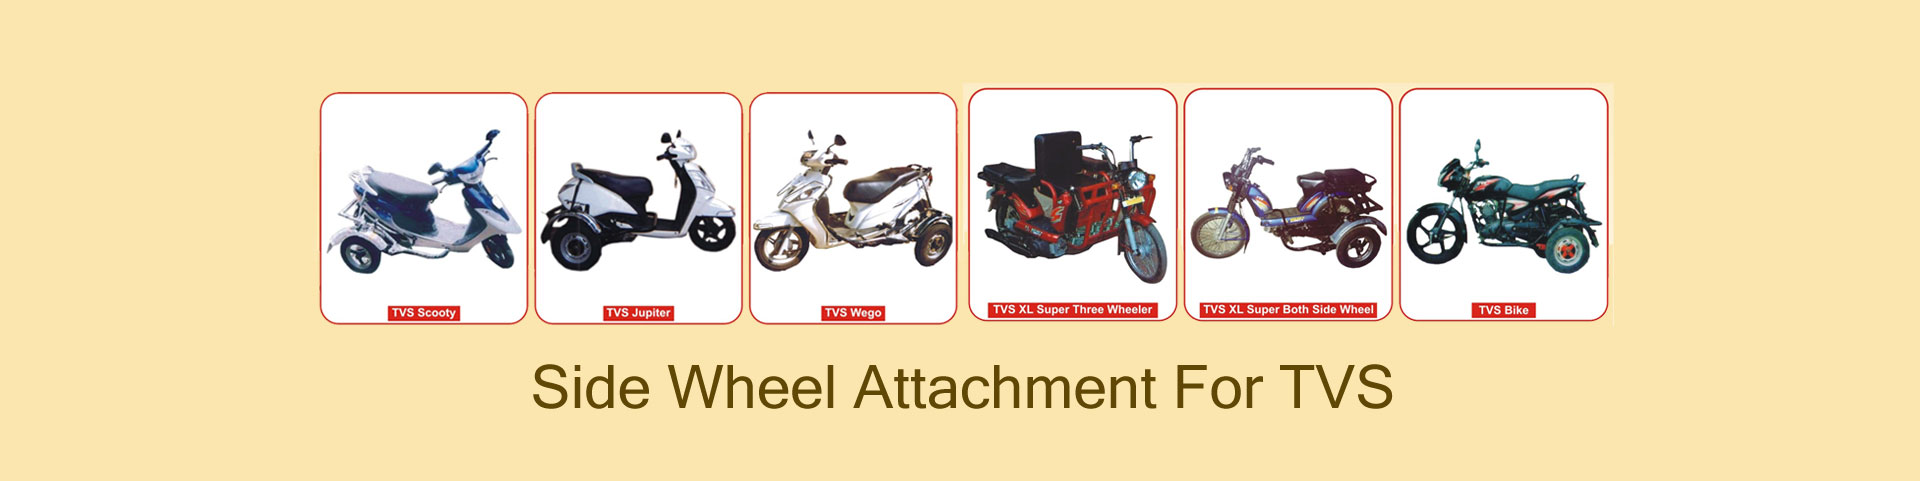 side wheel attachment